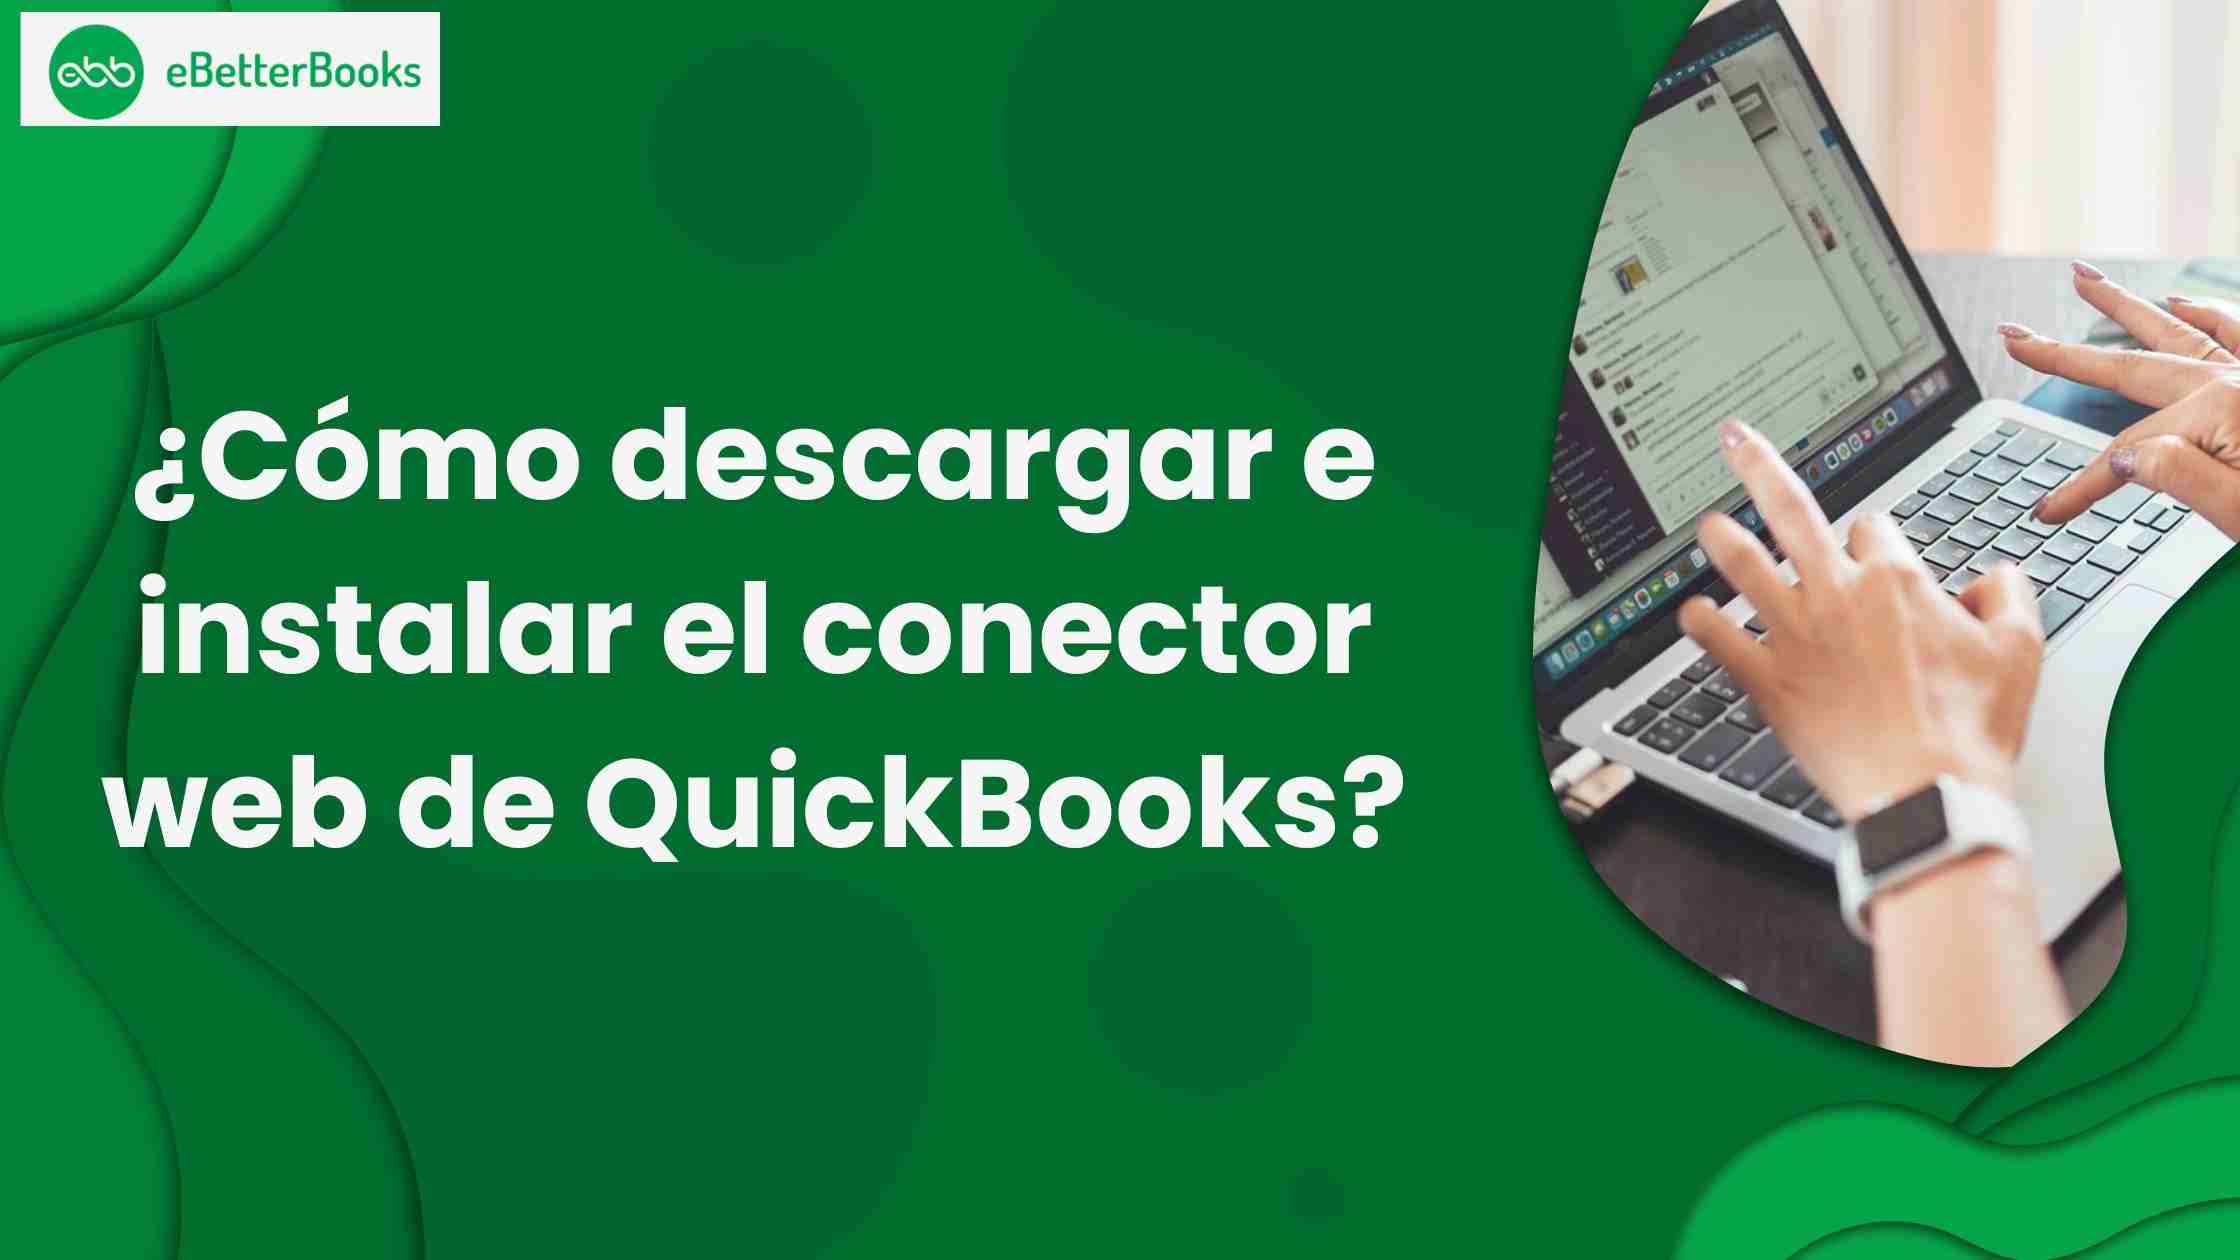 ¿Cómo descargar e instalar el conector web de QuickBooks?